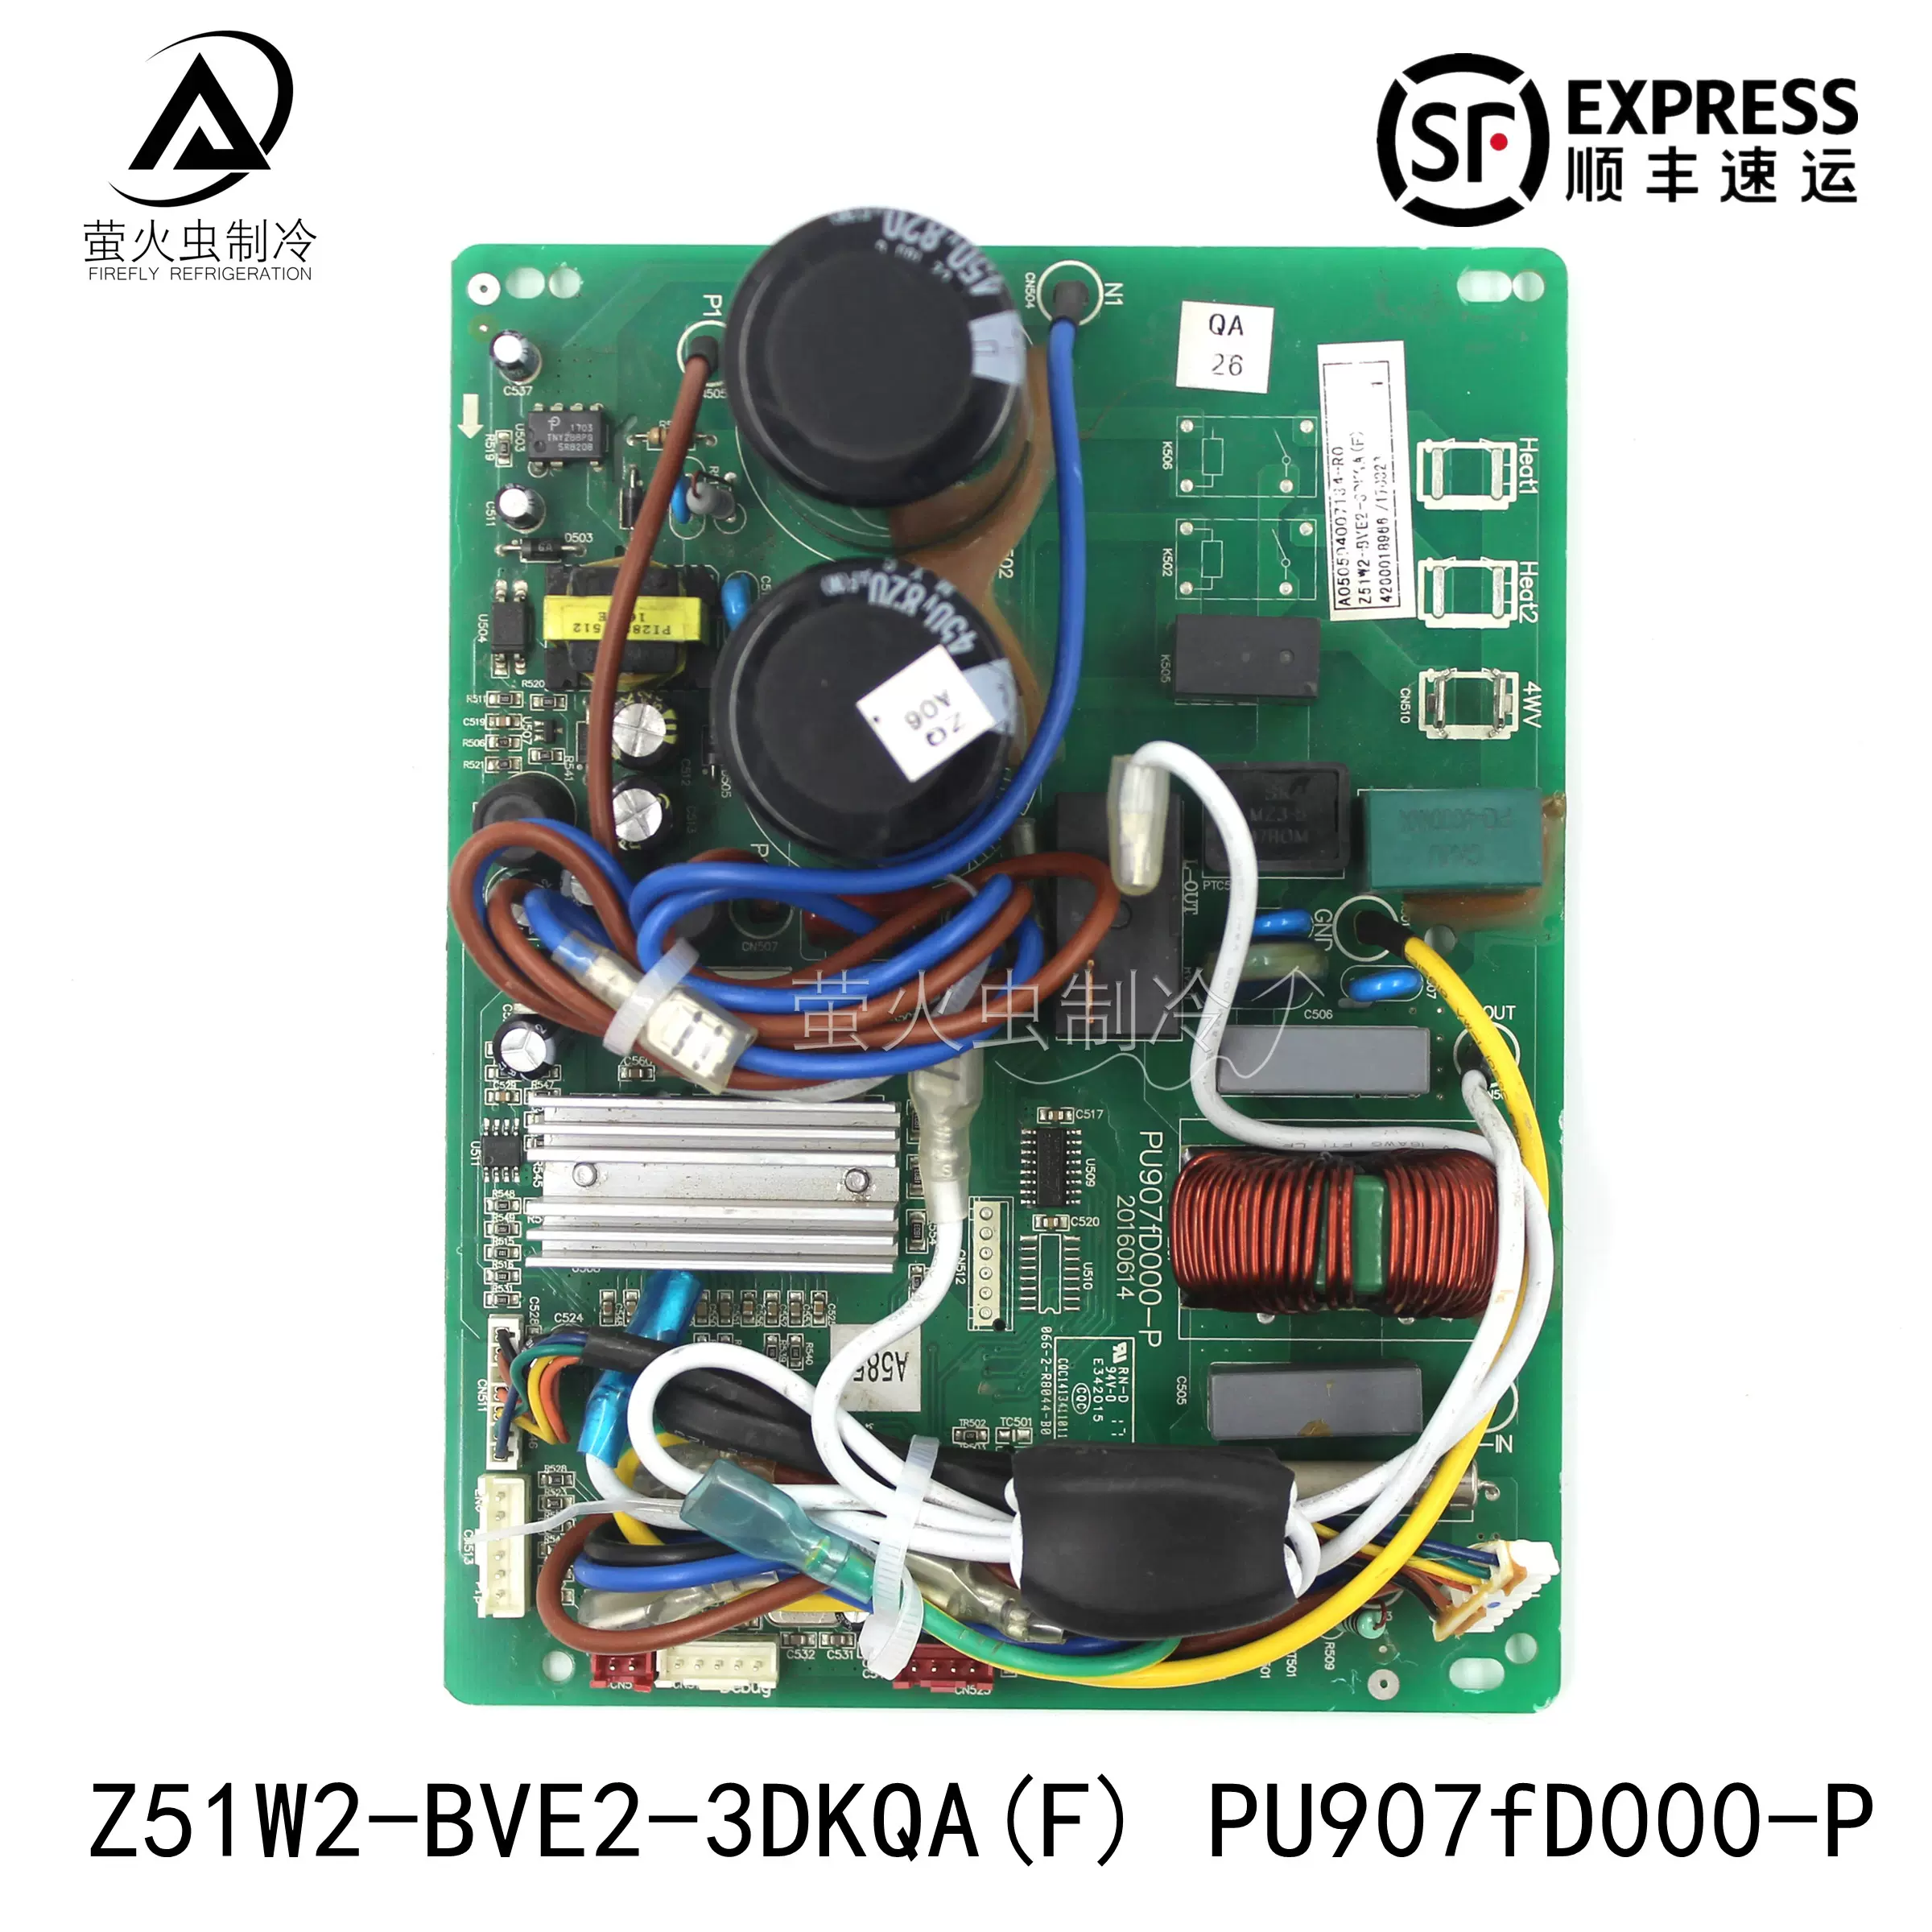 全新志高空调线路板PU907fD000-P变频外主板Z51W2-BVE2-3DKQA(F)-Taobao